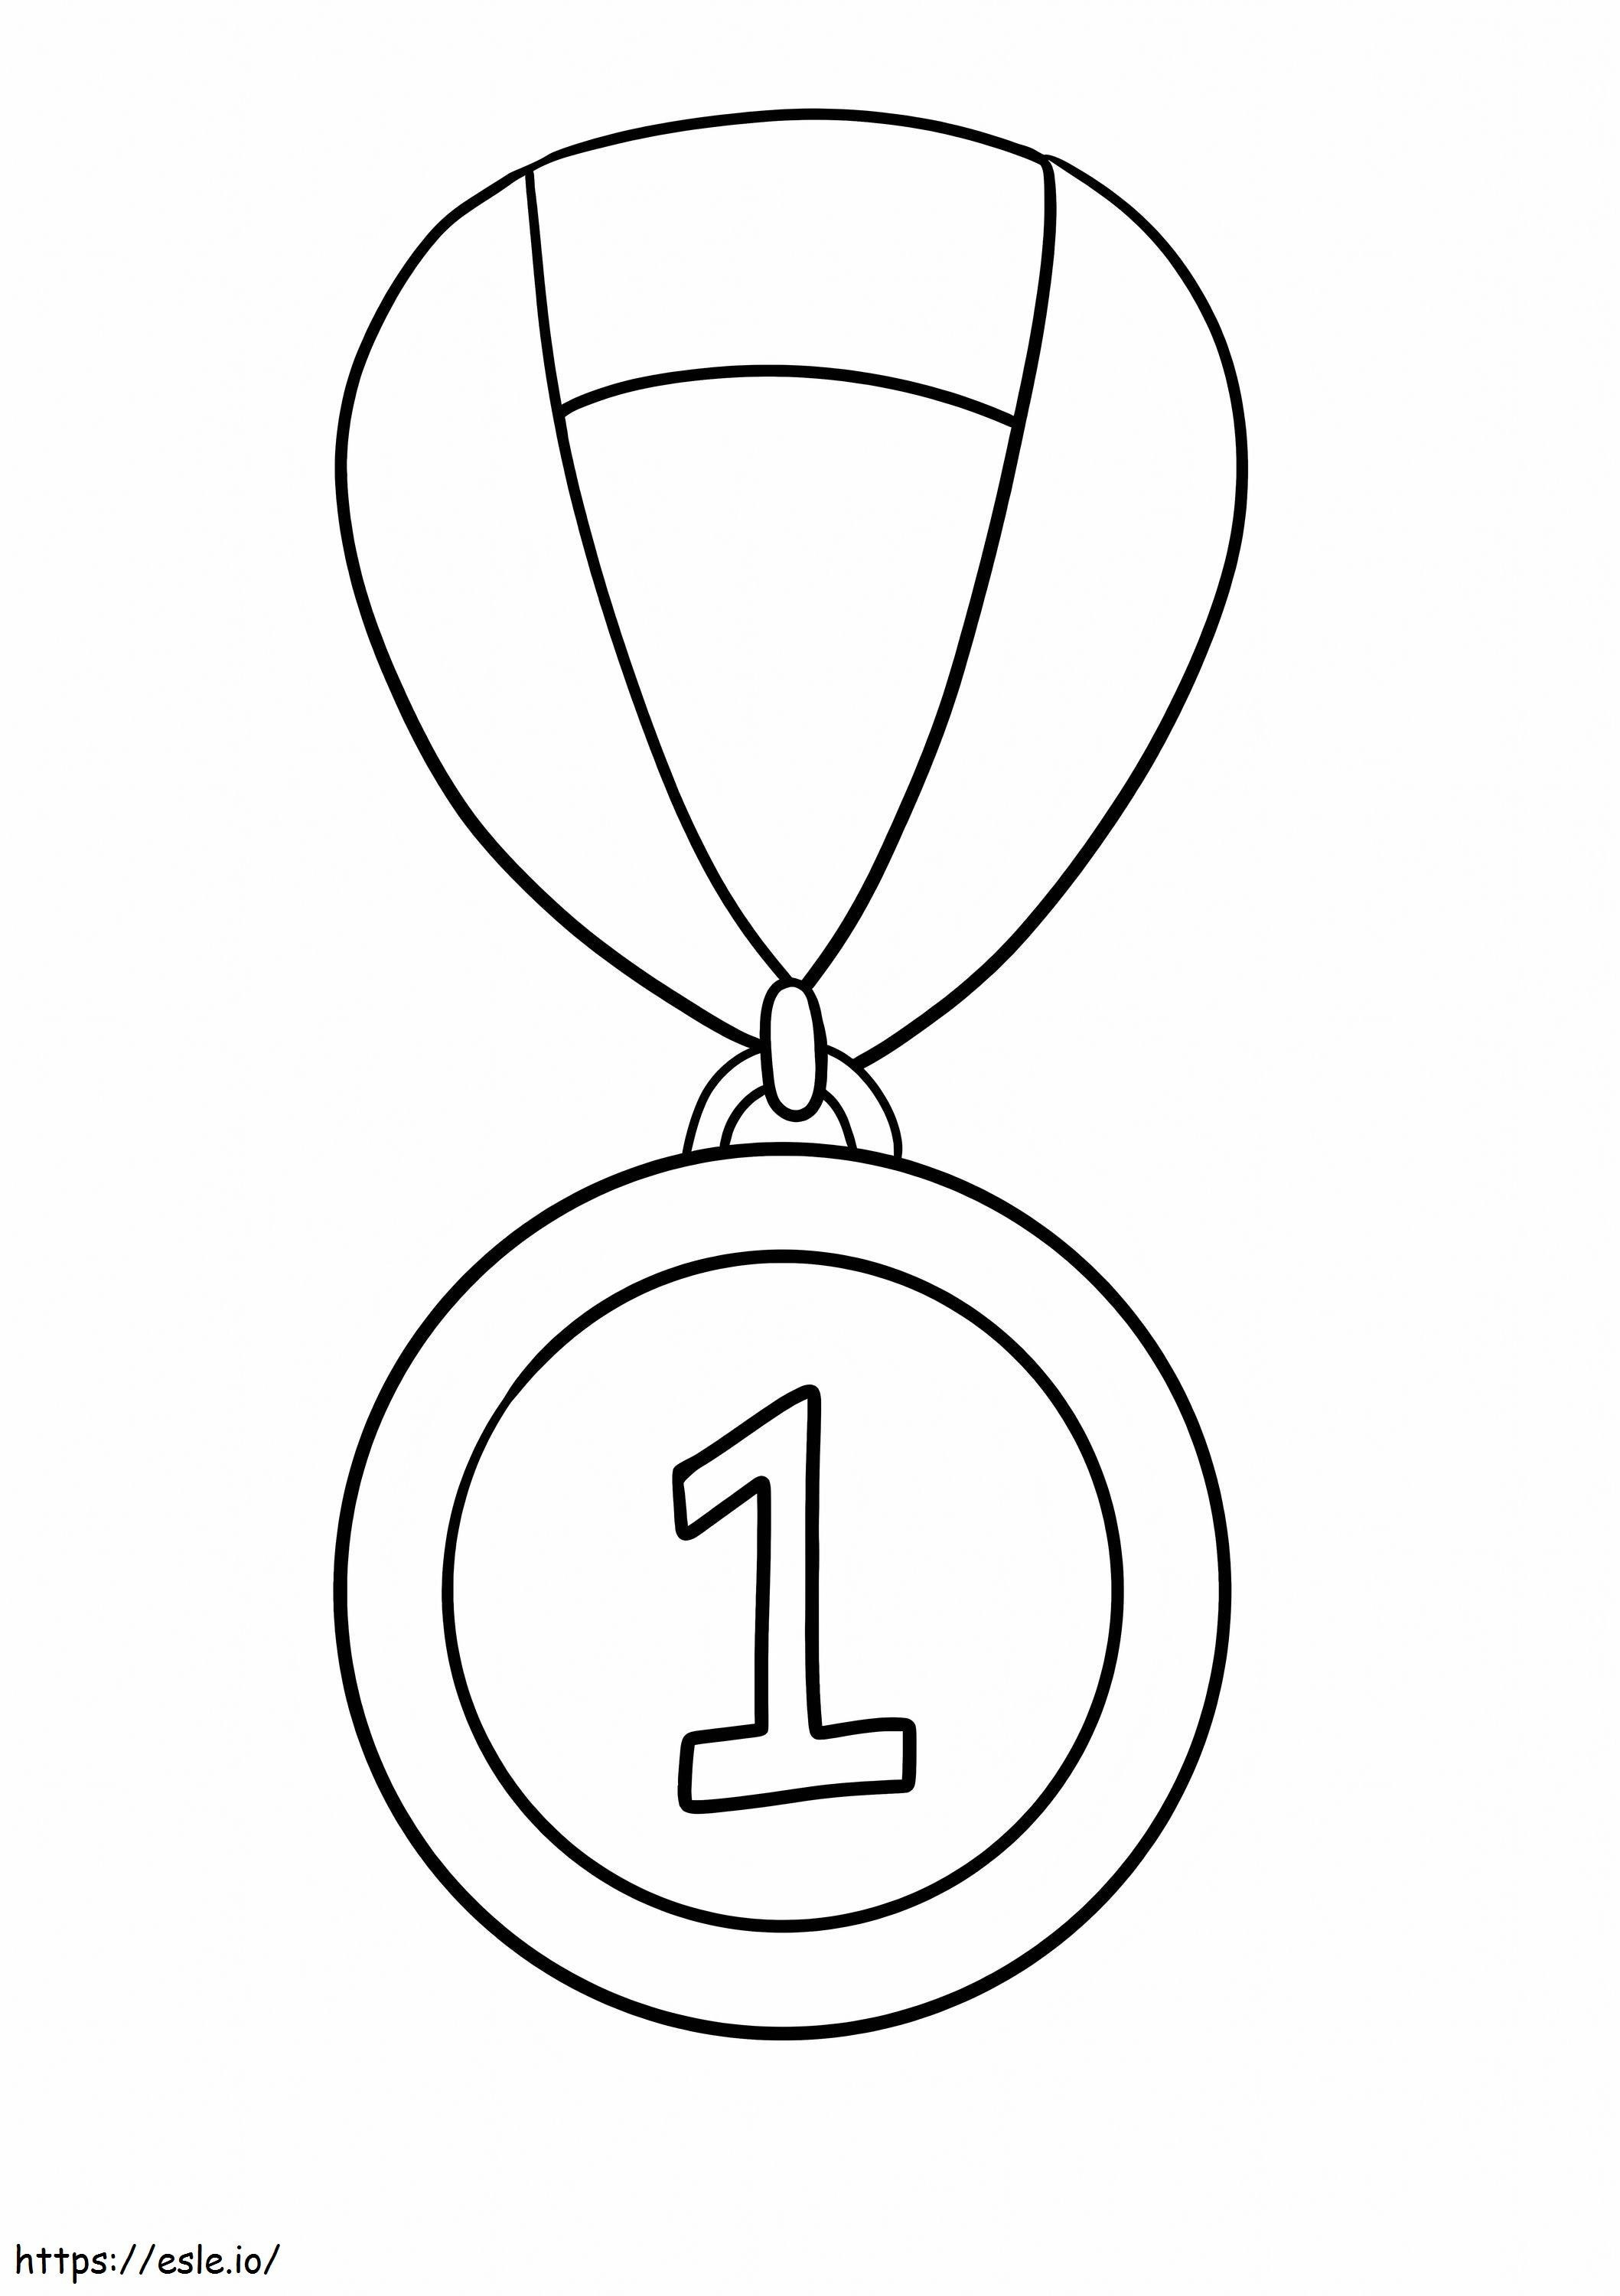 Medalla número 1 para colorear